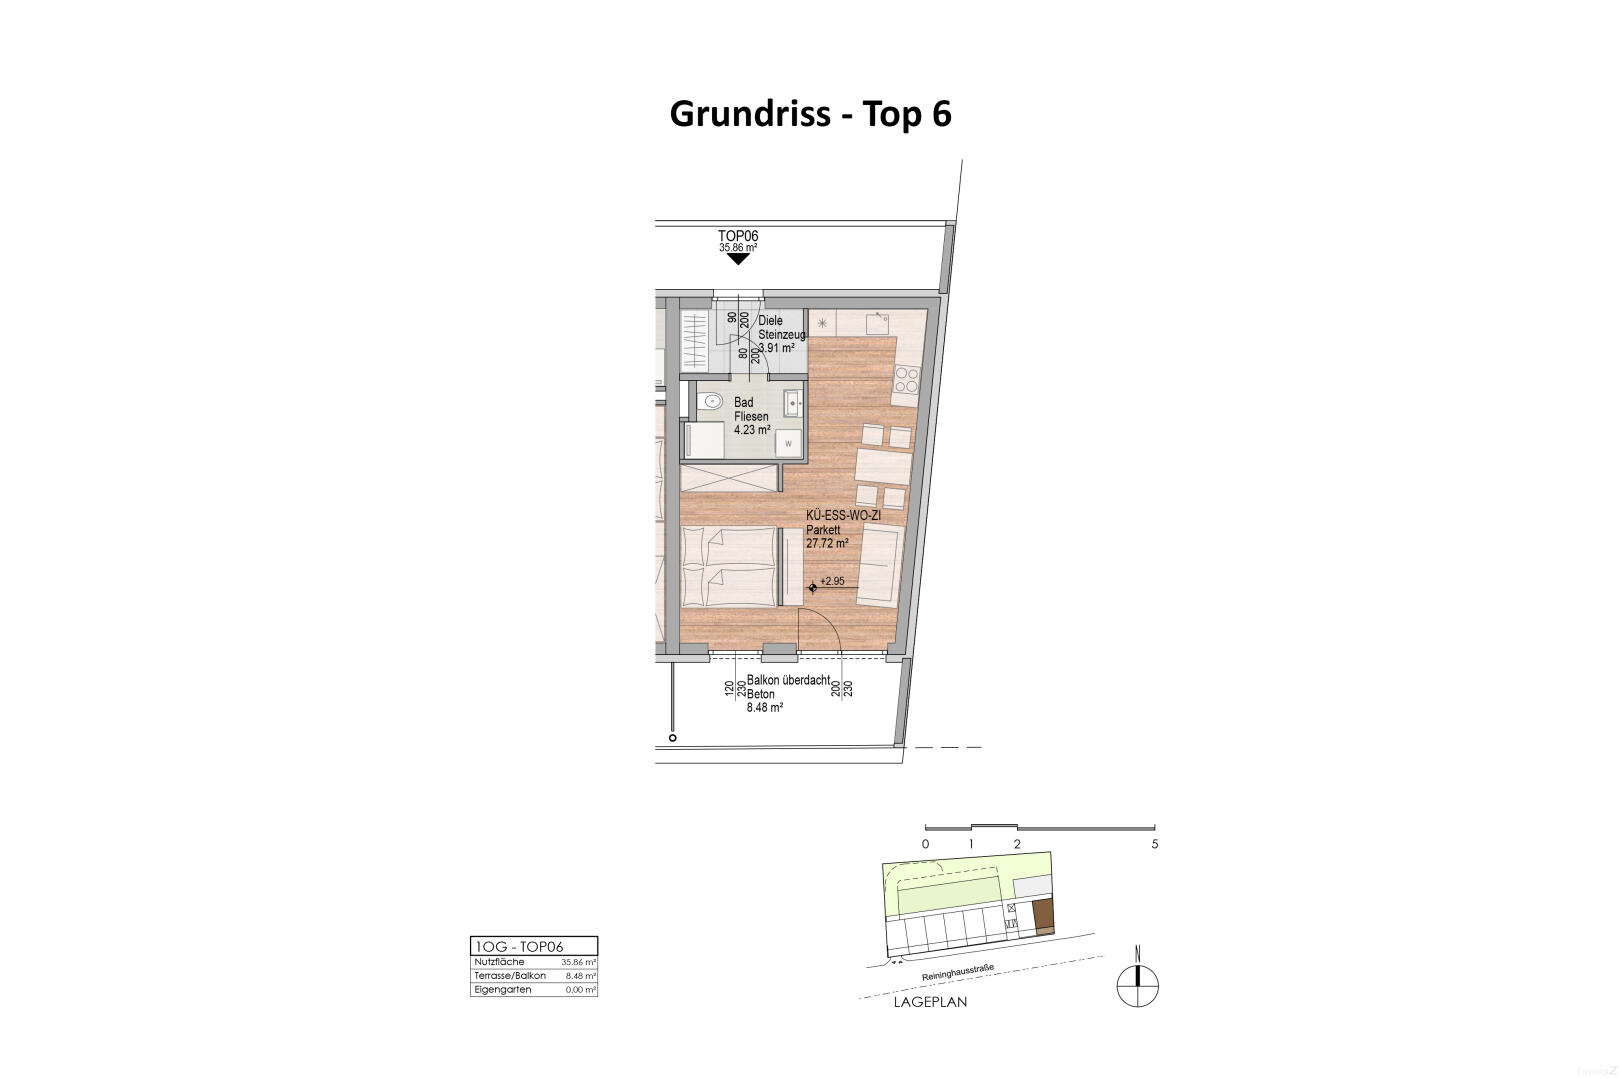 Wohnung zu mieten: Reininghausstraße 56, 8020 Graz - Grundriss Top 6